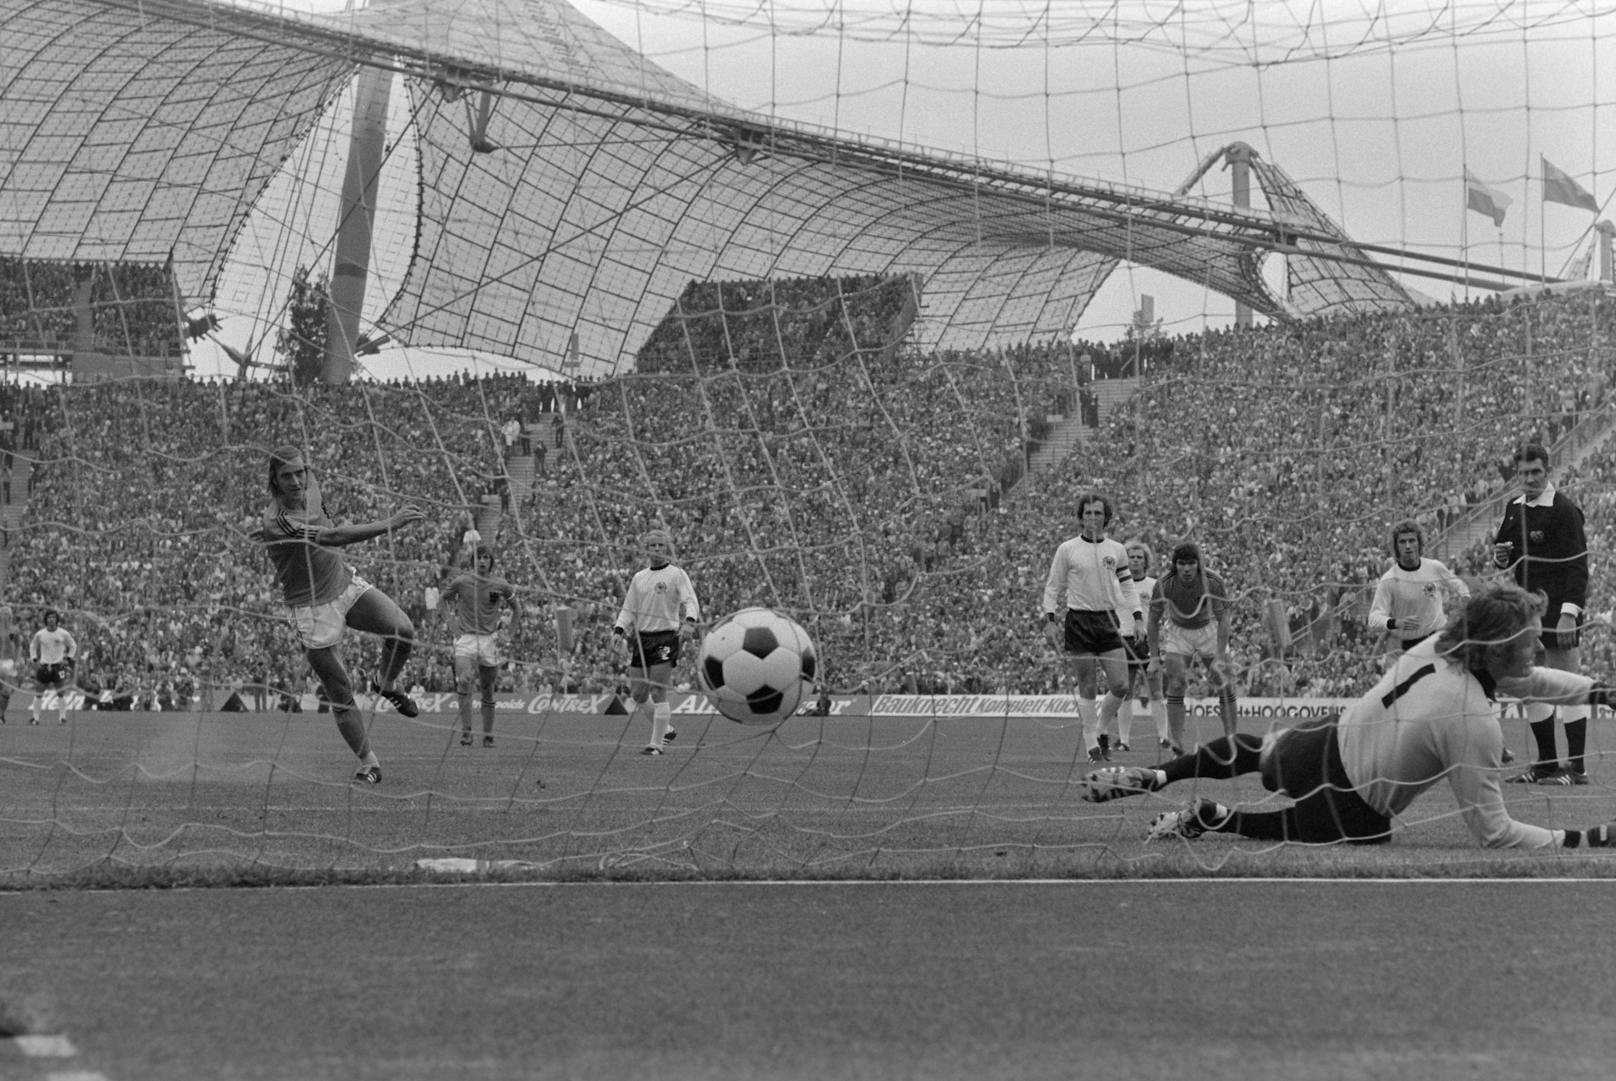 Der schnellste Elfmeter: In der 1. Minute im Finale Deutschland – Niederlande bei der WM 1974. Johan Neeskens verwandelte ihn zum 1:0 für die Niederlande. Die deutsche Mannschaft hatte vor dem Gegentreffer keine einzige Ballberührung.